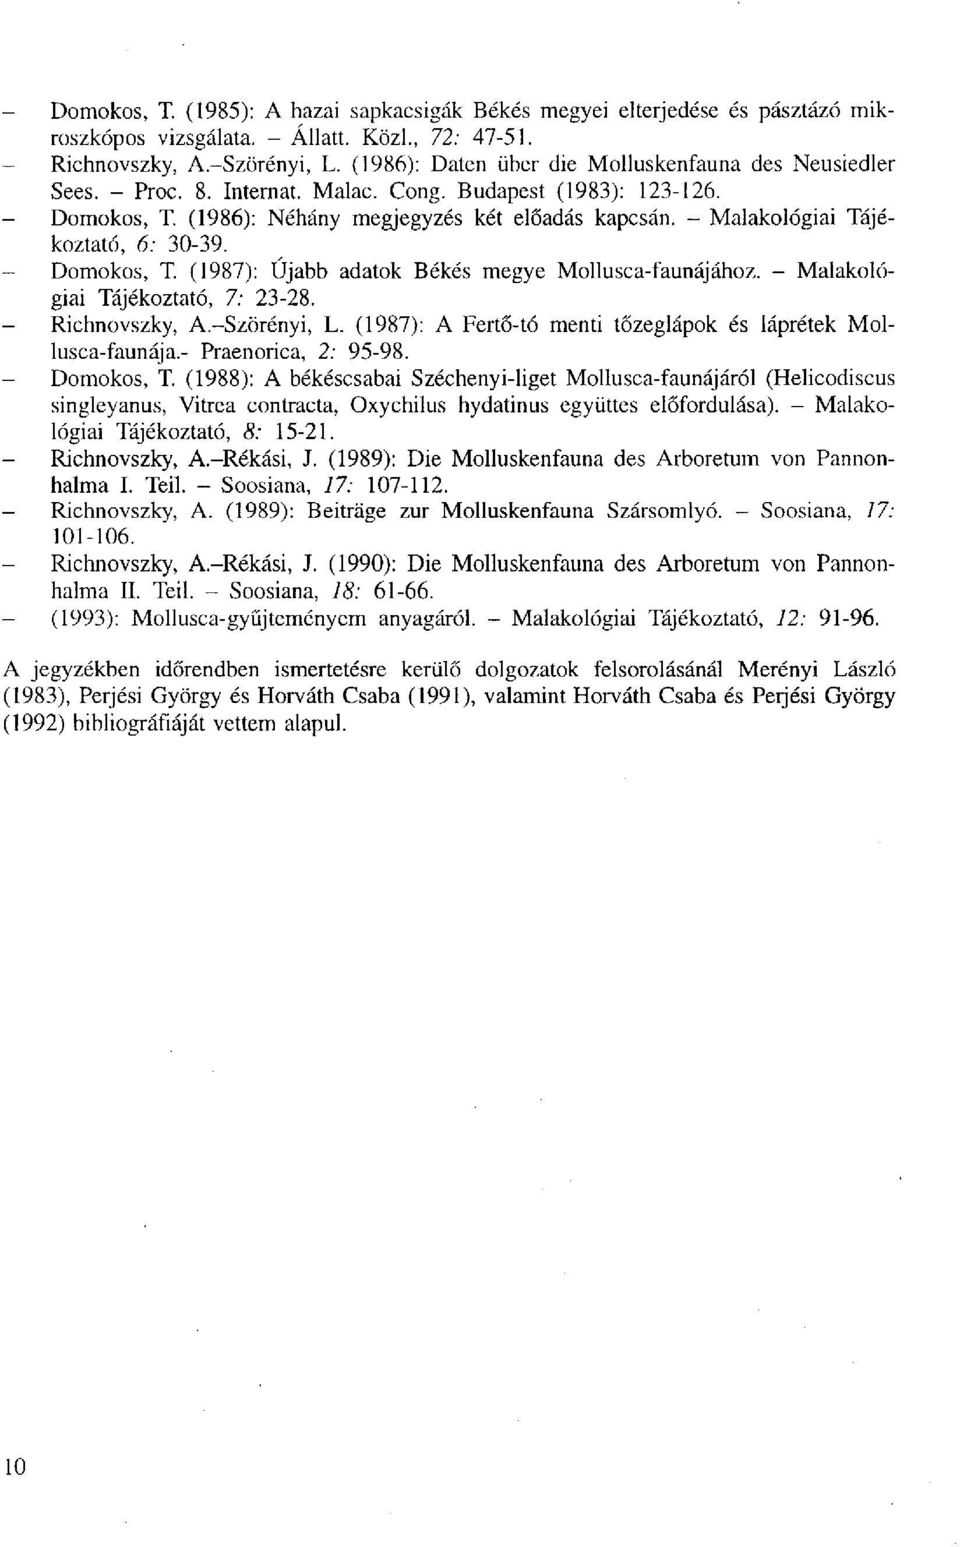 - Malakológiai Tájékoztató, 6: 30-39. - Domokos, T. (1987): Újabb adatok Békés megye Mollusca-faunájához. - Malakológiai Tájékoztató, 7: 23-28. - Richnovszky, A.-Szörényi, L.